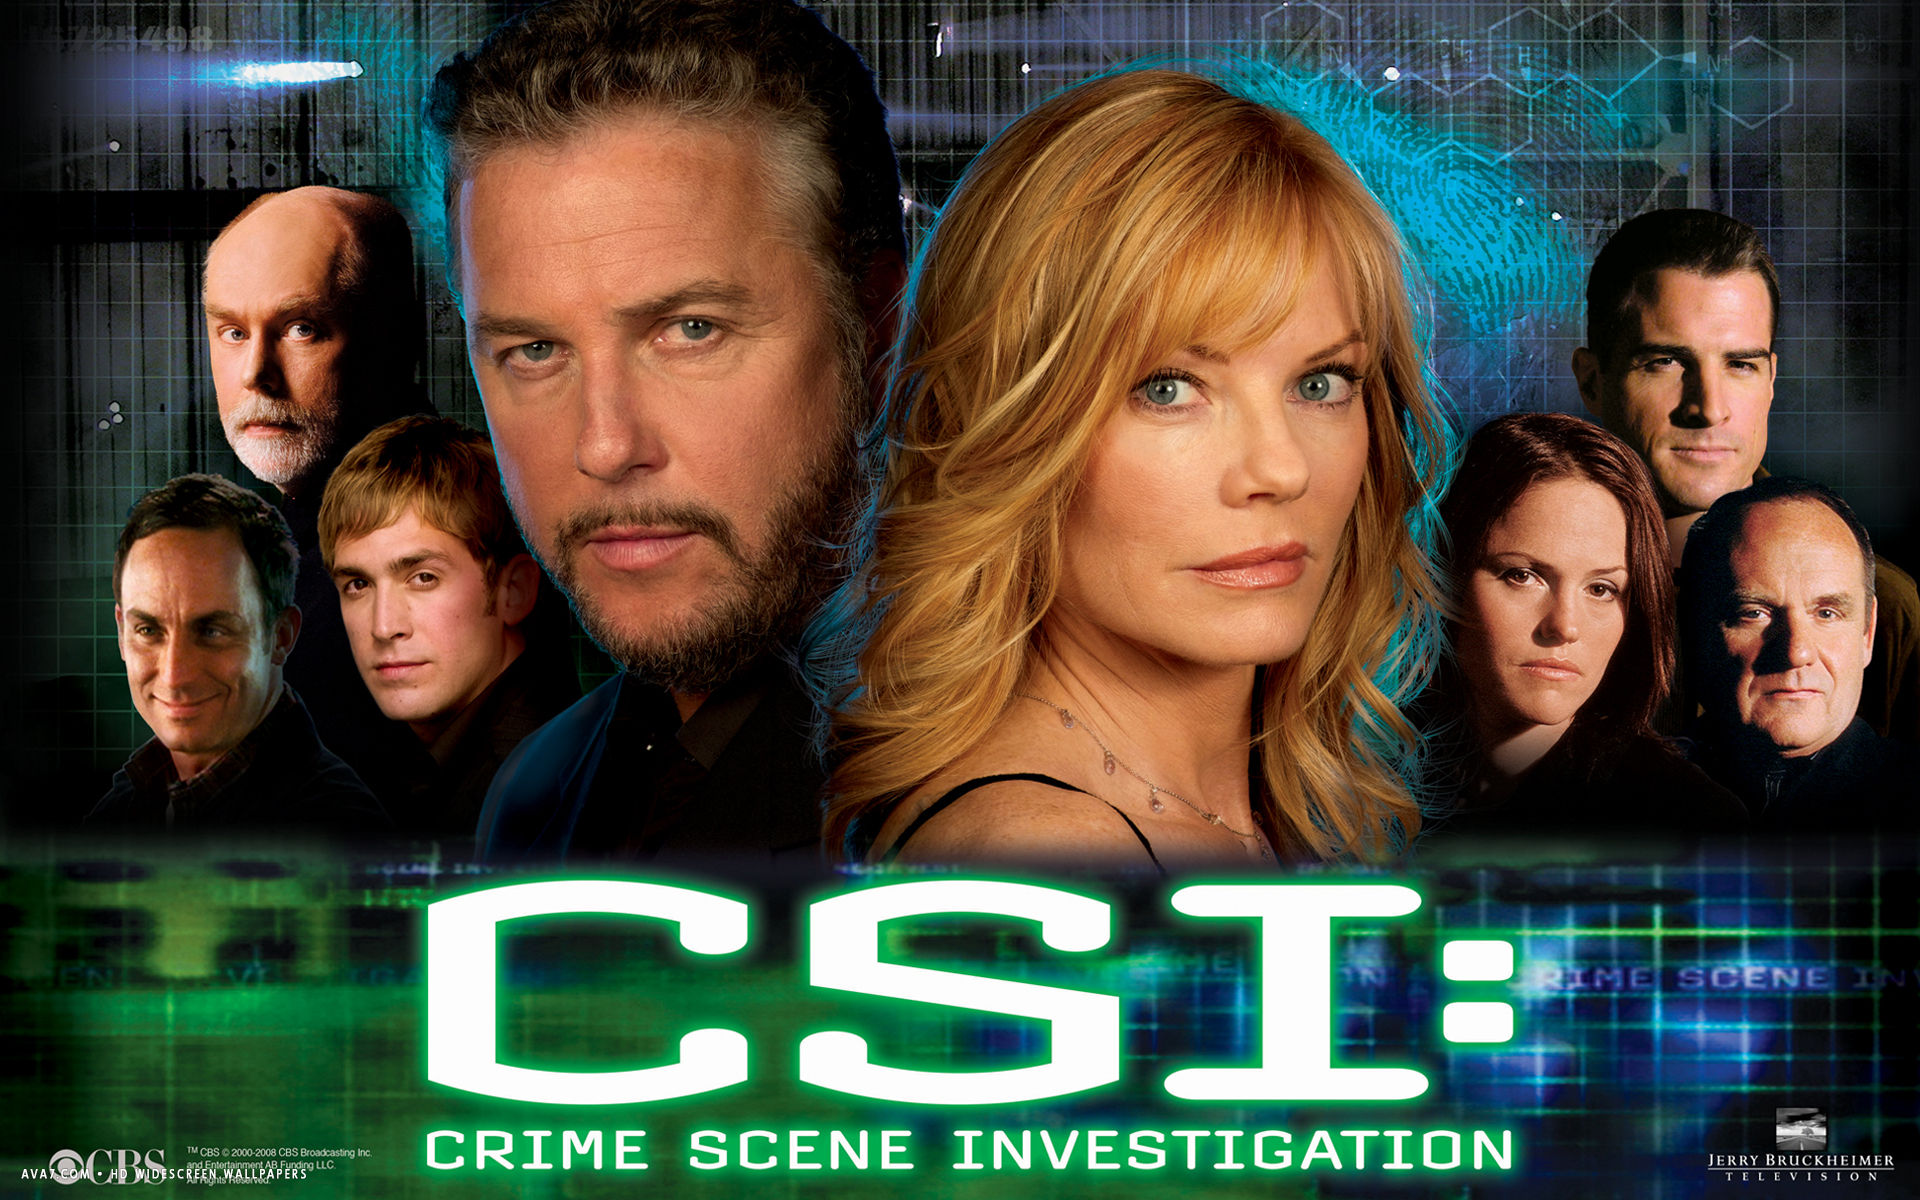 csi crime scene investigation tv series show hd widescreen wallpaper